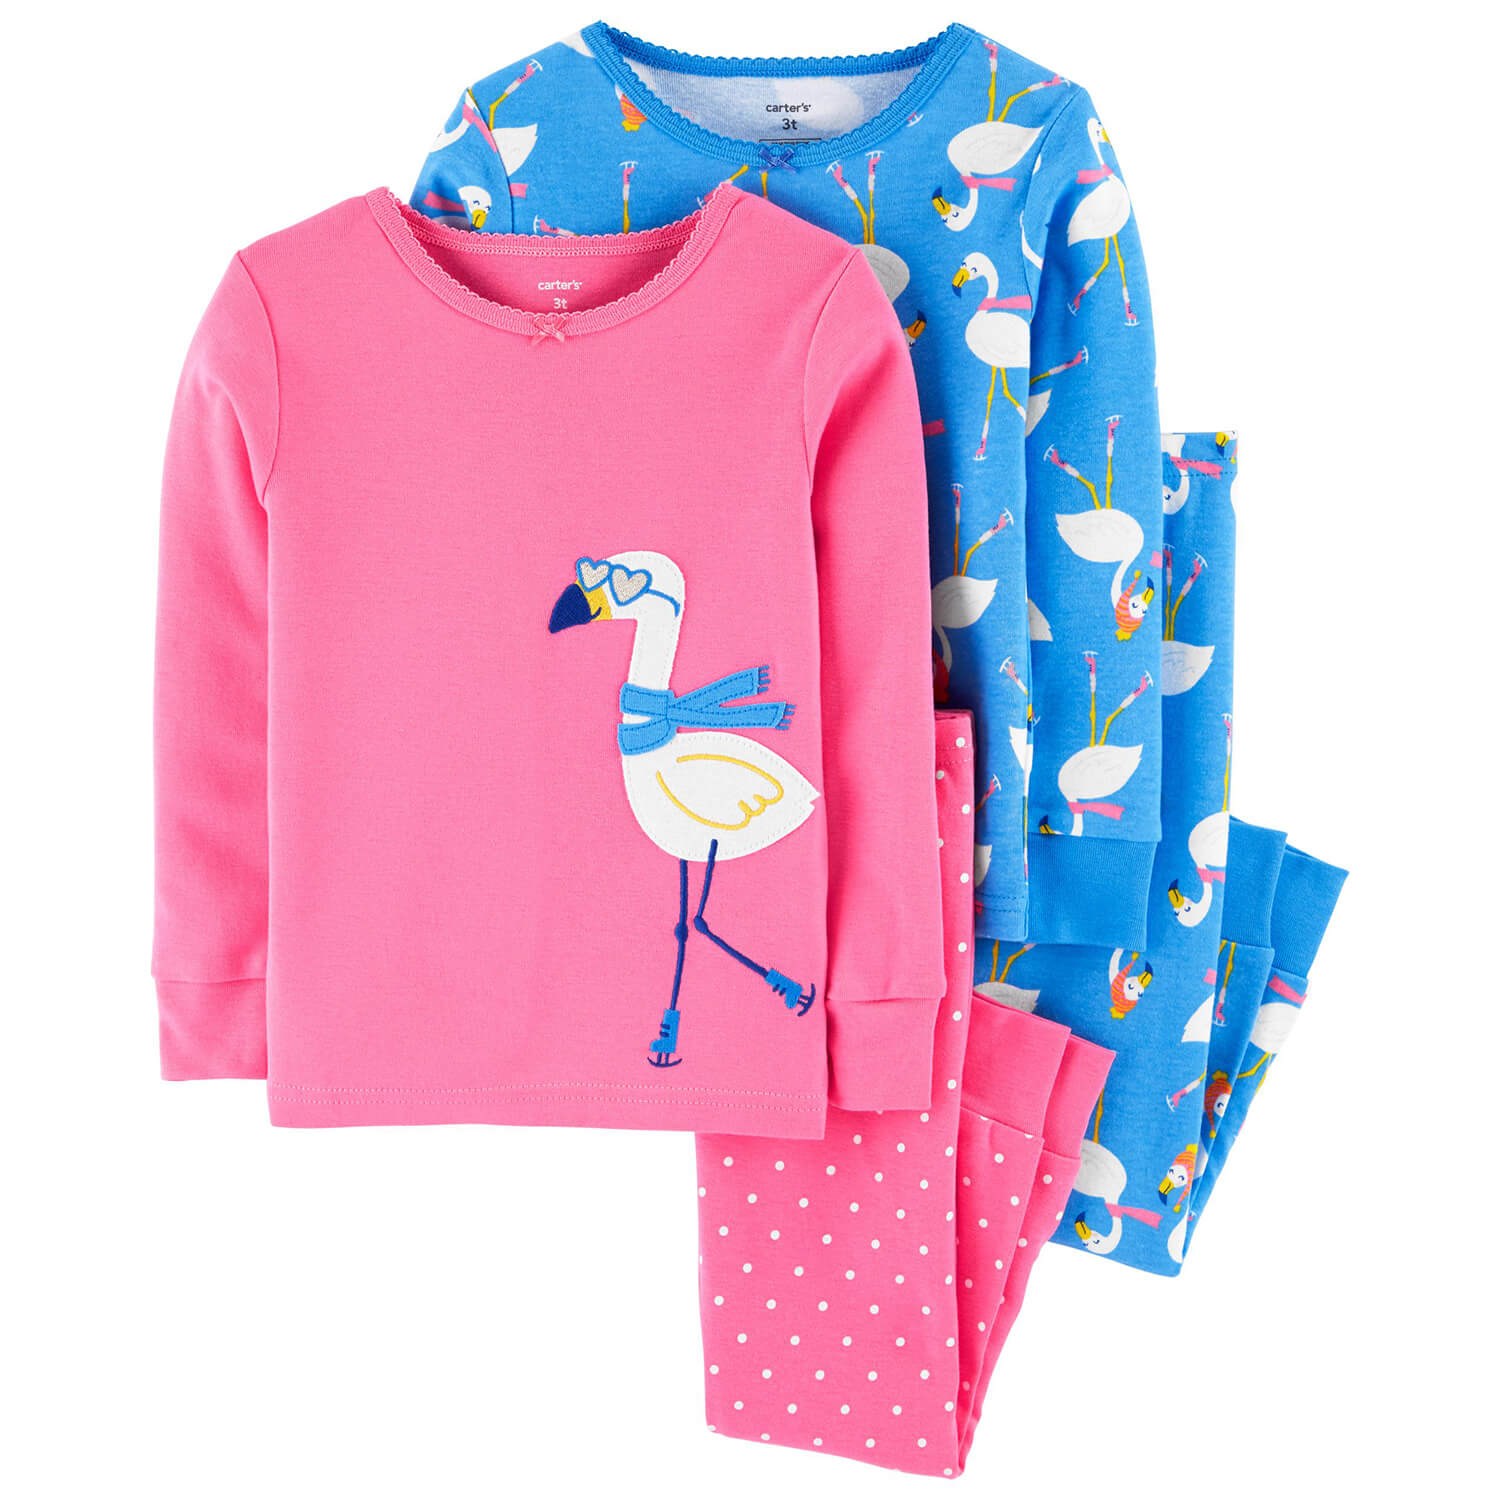 Carter's Flamingo 4'lü Bebek Pijama Takımı Pembe-Mavi